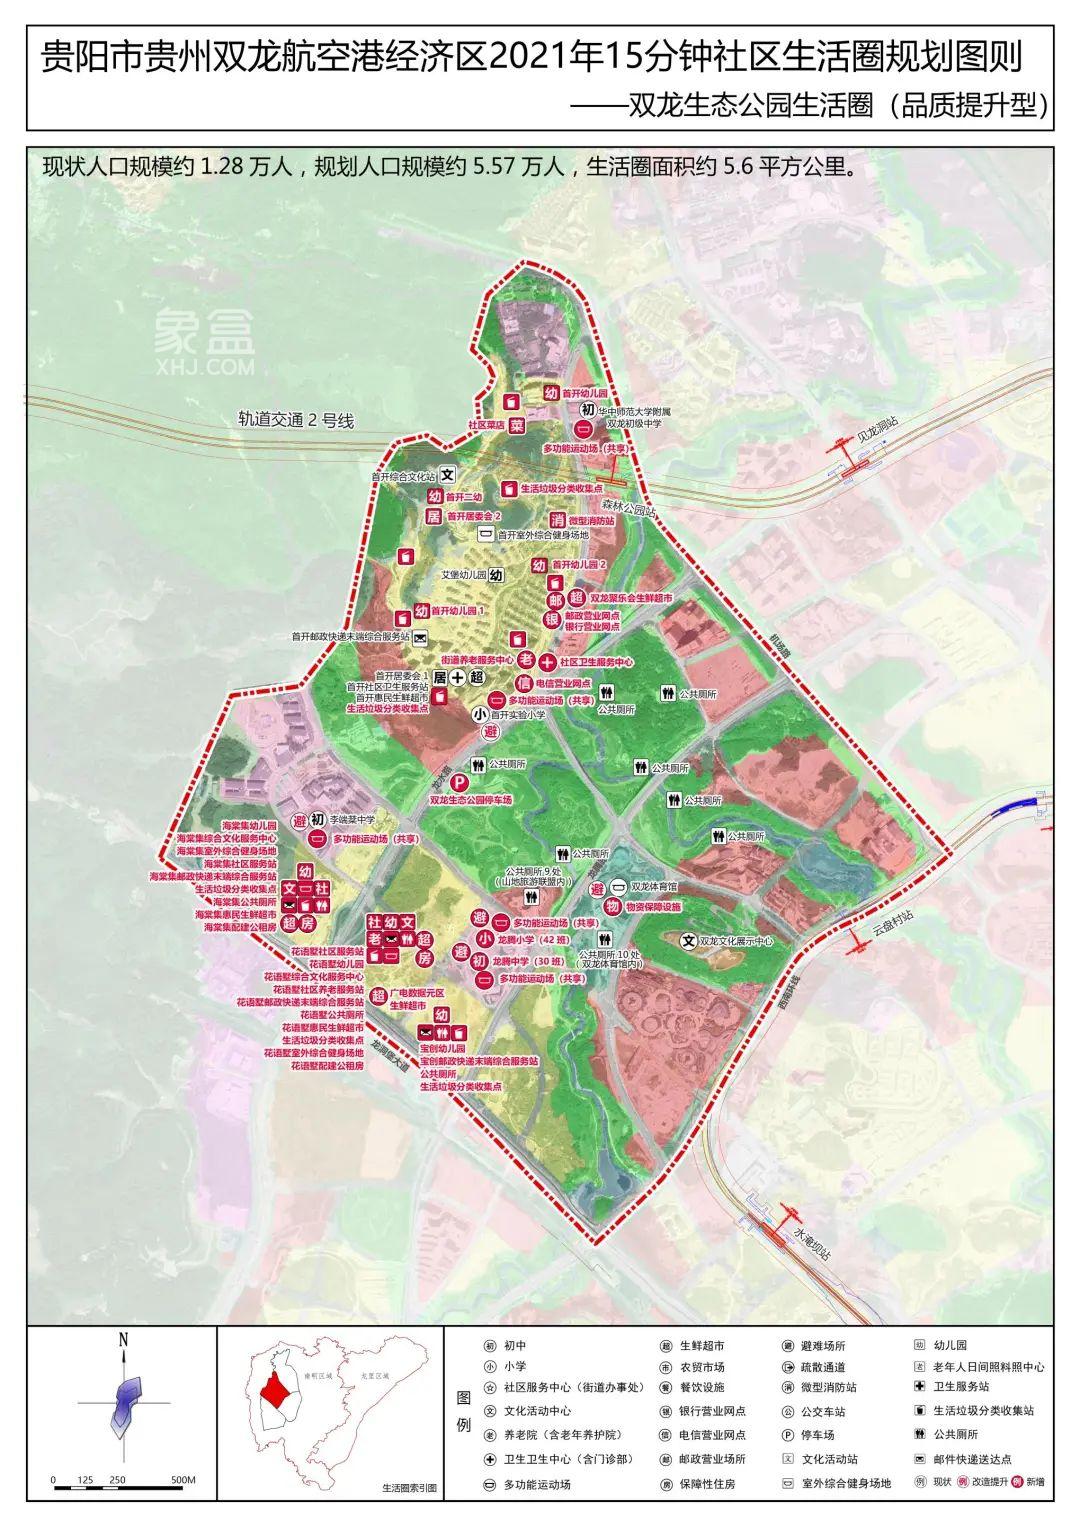 双龙生态公园生活圈规划公示，新建学校等设施，规划服务5.57万人